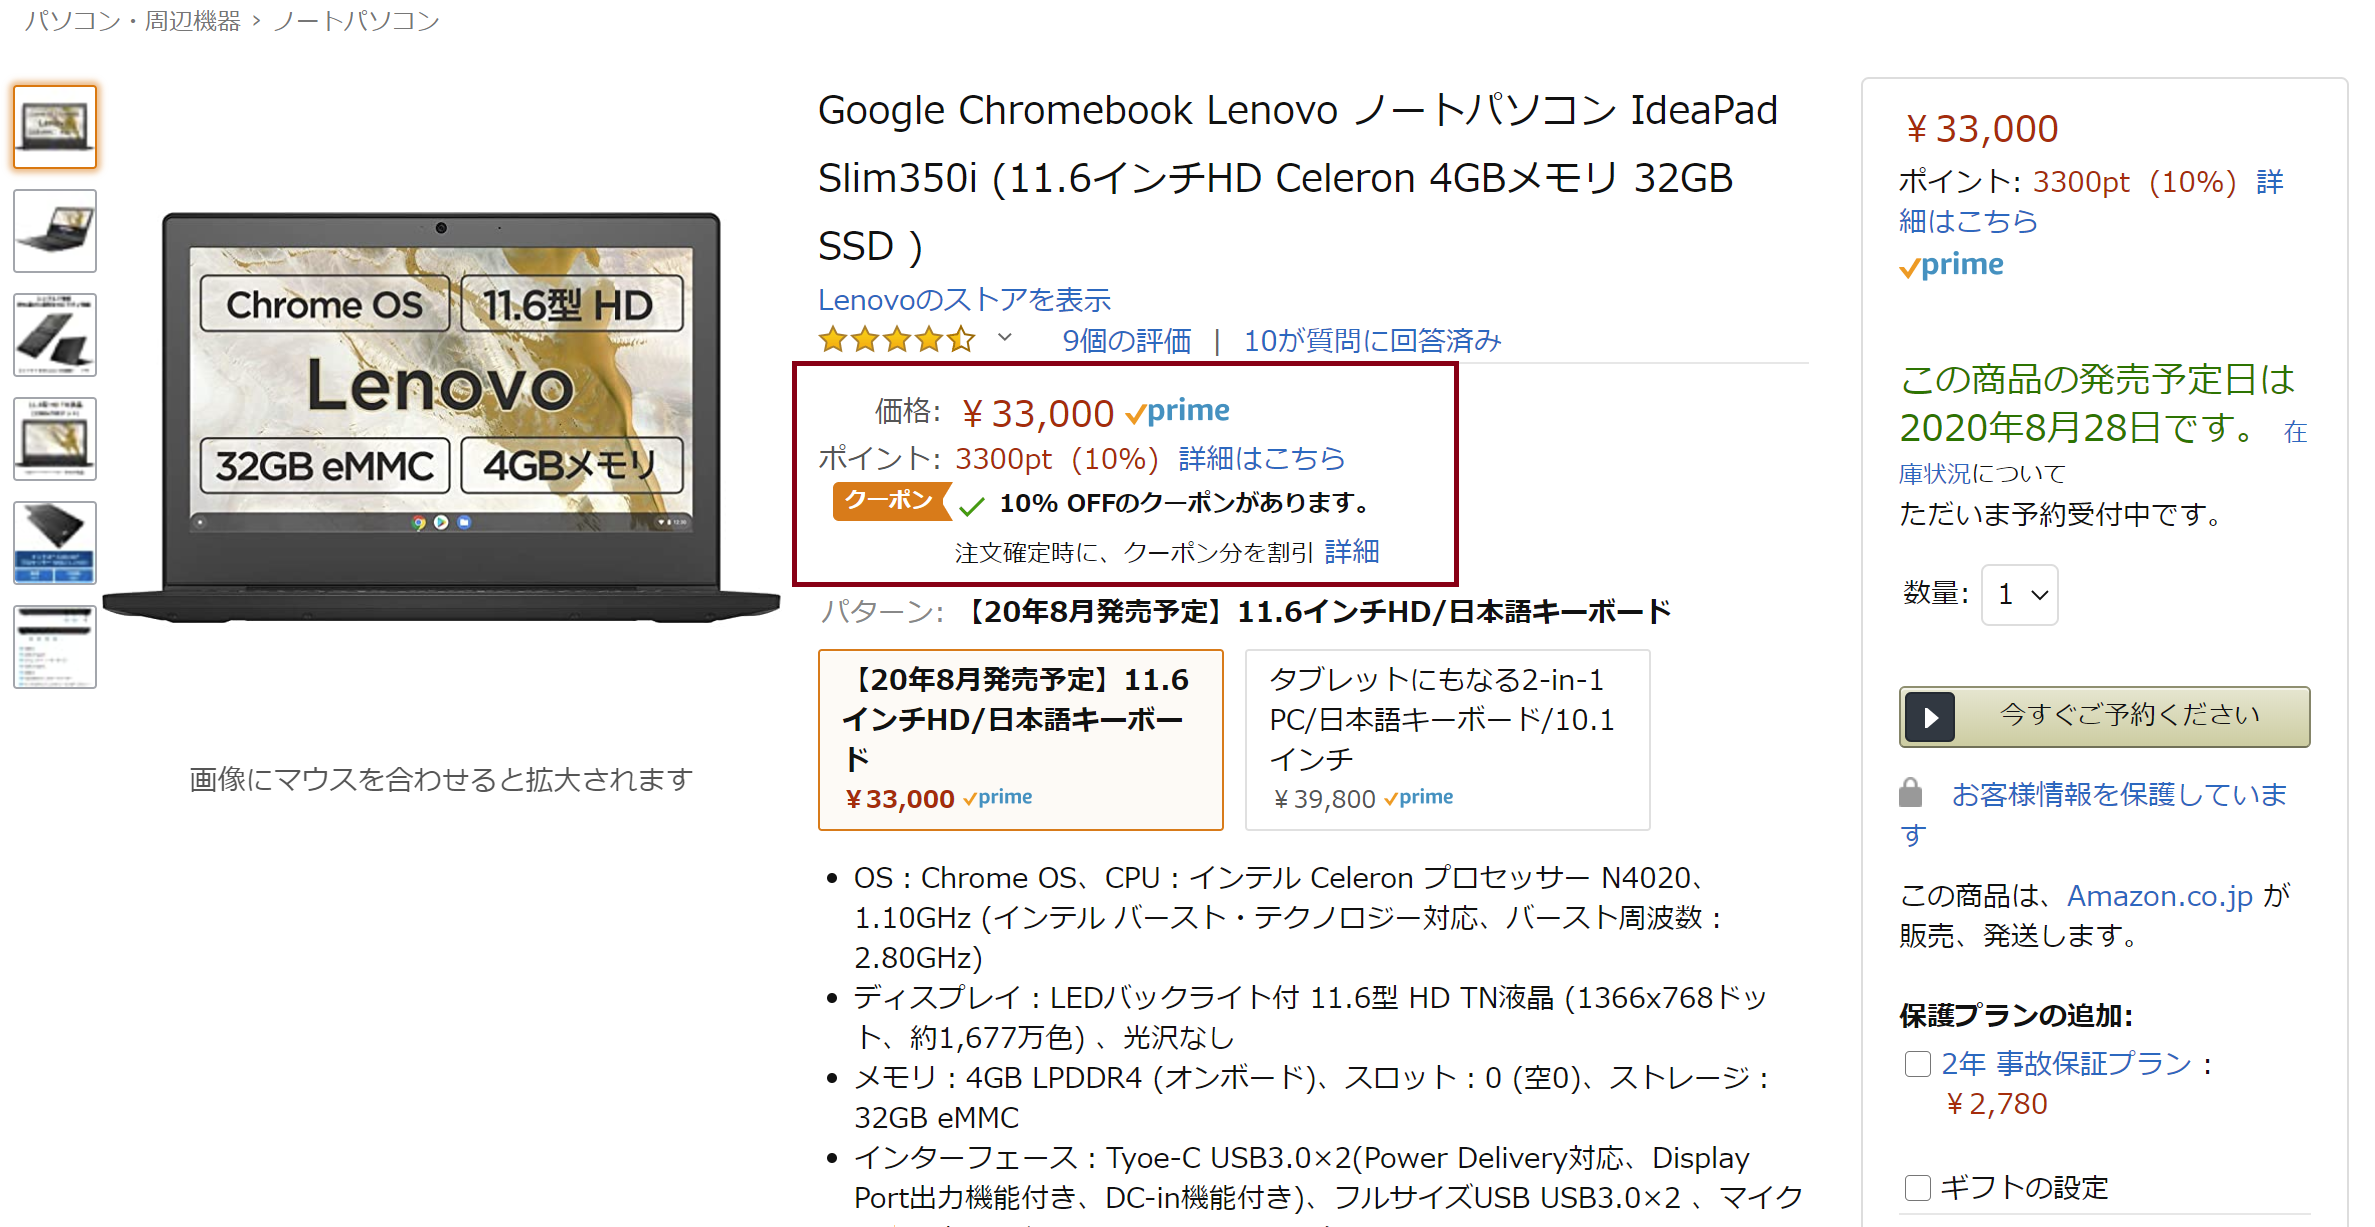 [かぶ] “実質”26,000円強で8月末発売予定のLenovo IdeaPad Slim350i Chromebookの特長と魅力、現時点で